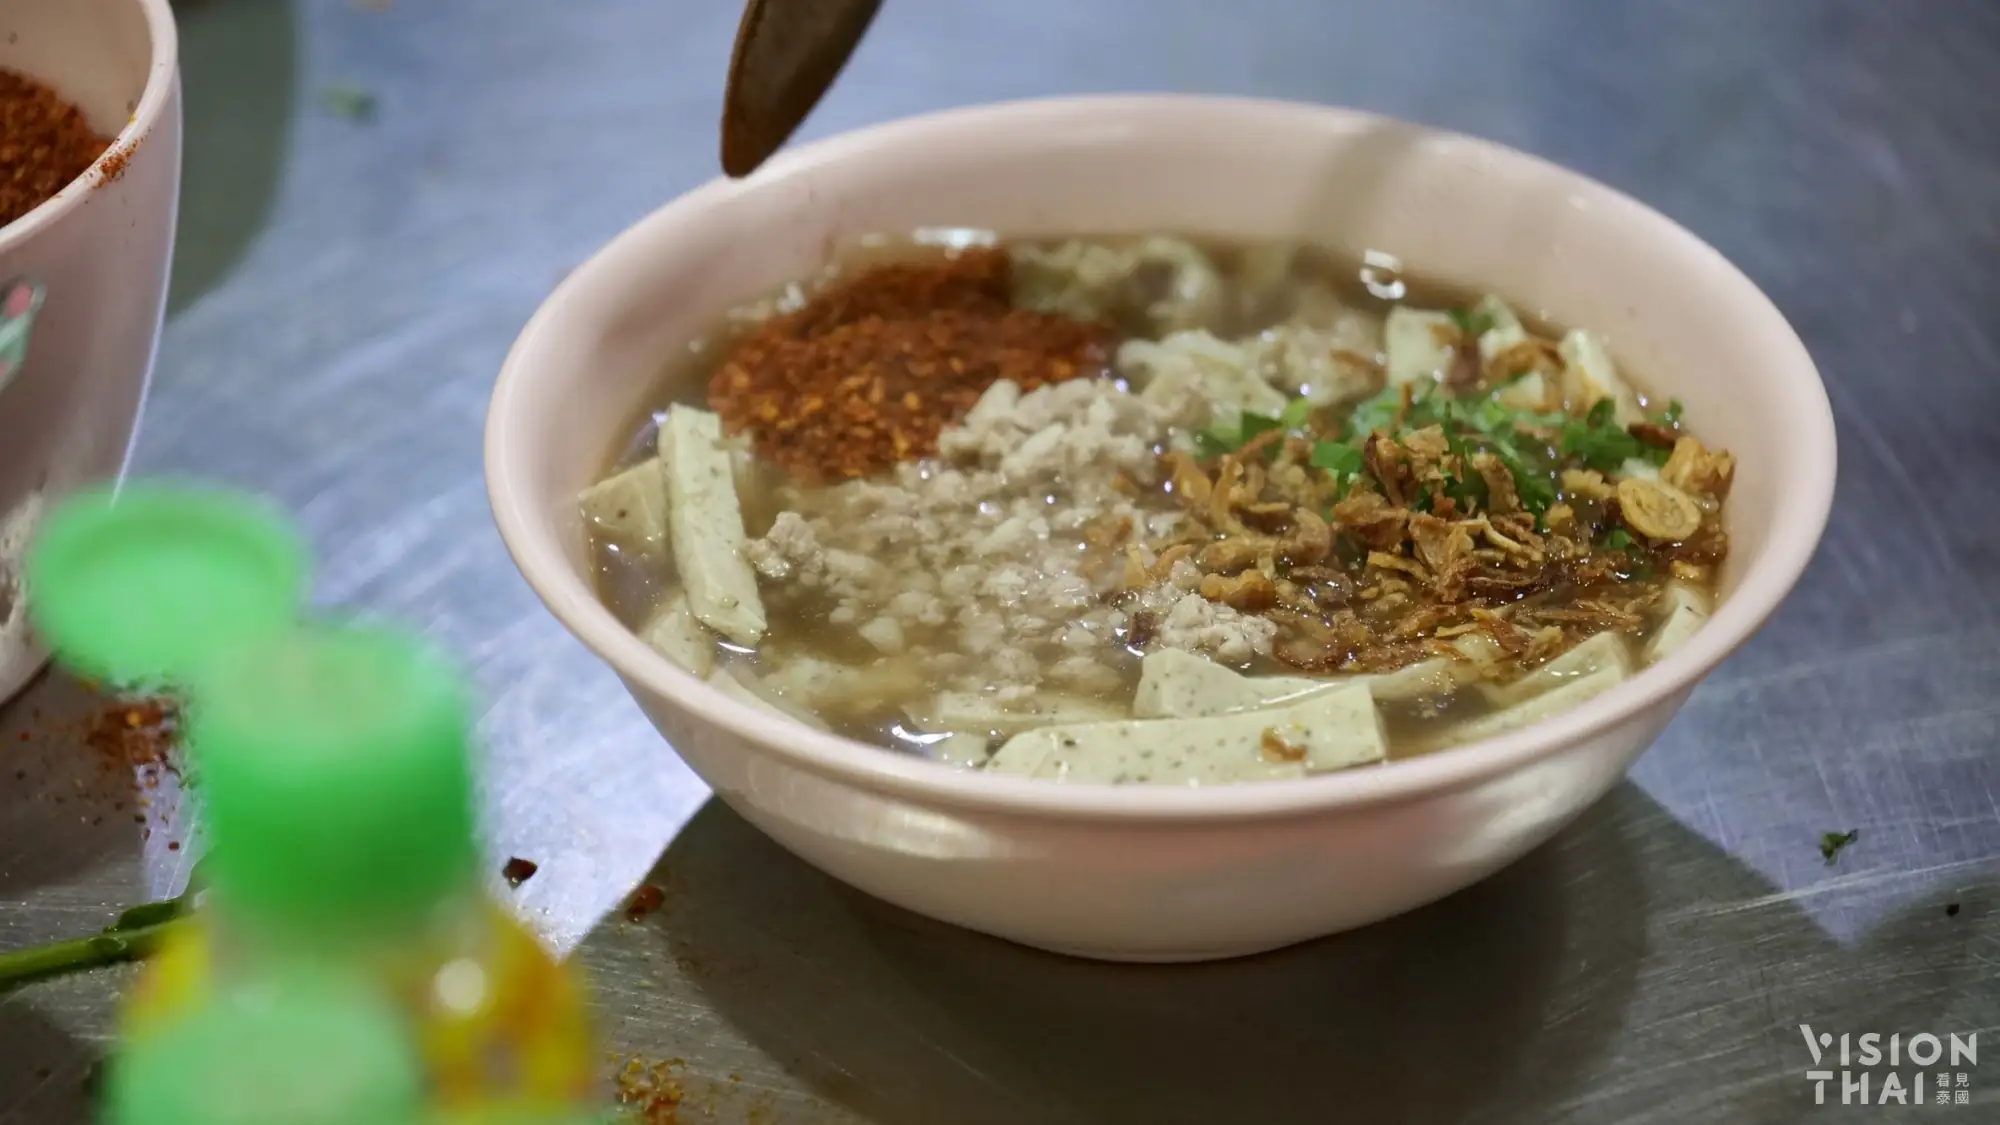 越式粿汁是必吃的泰国粿条之一（VISIONTHAI看见泰国）